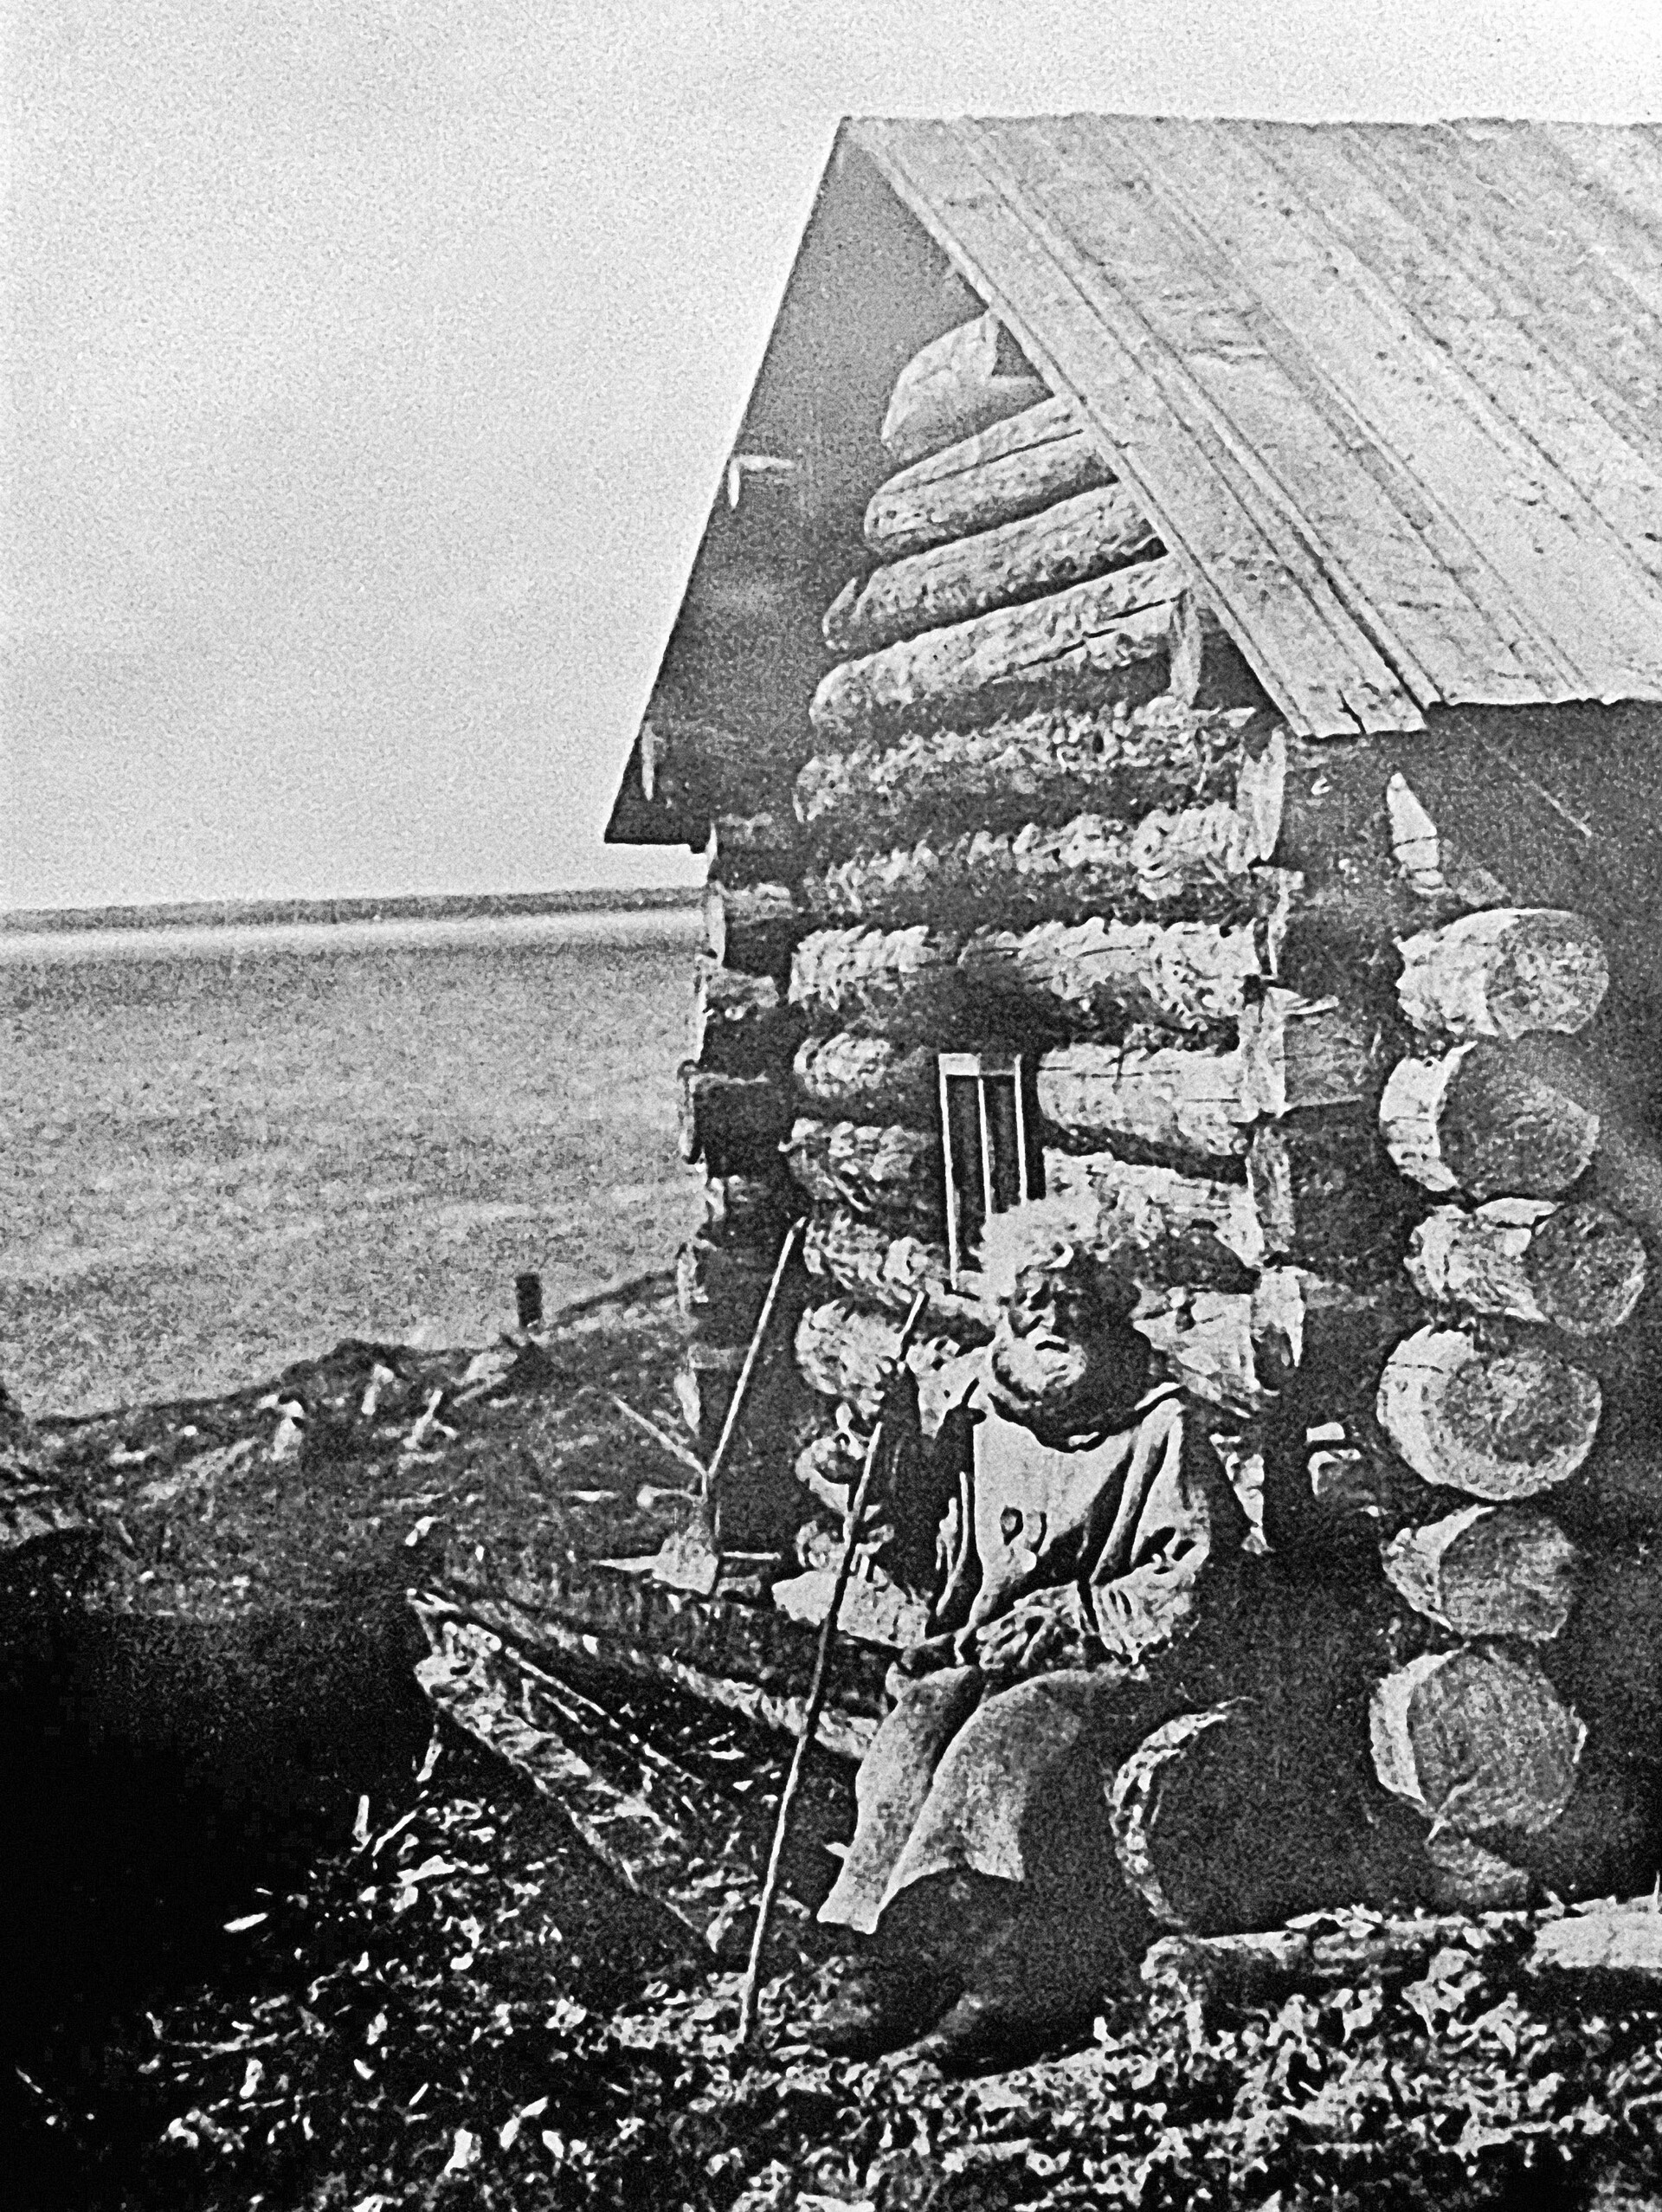 Један од првих становника града Мурманска, рибар Семјон Коржев, 1910.